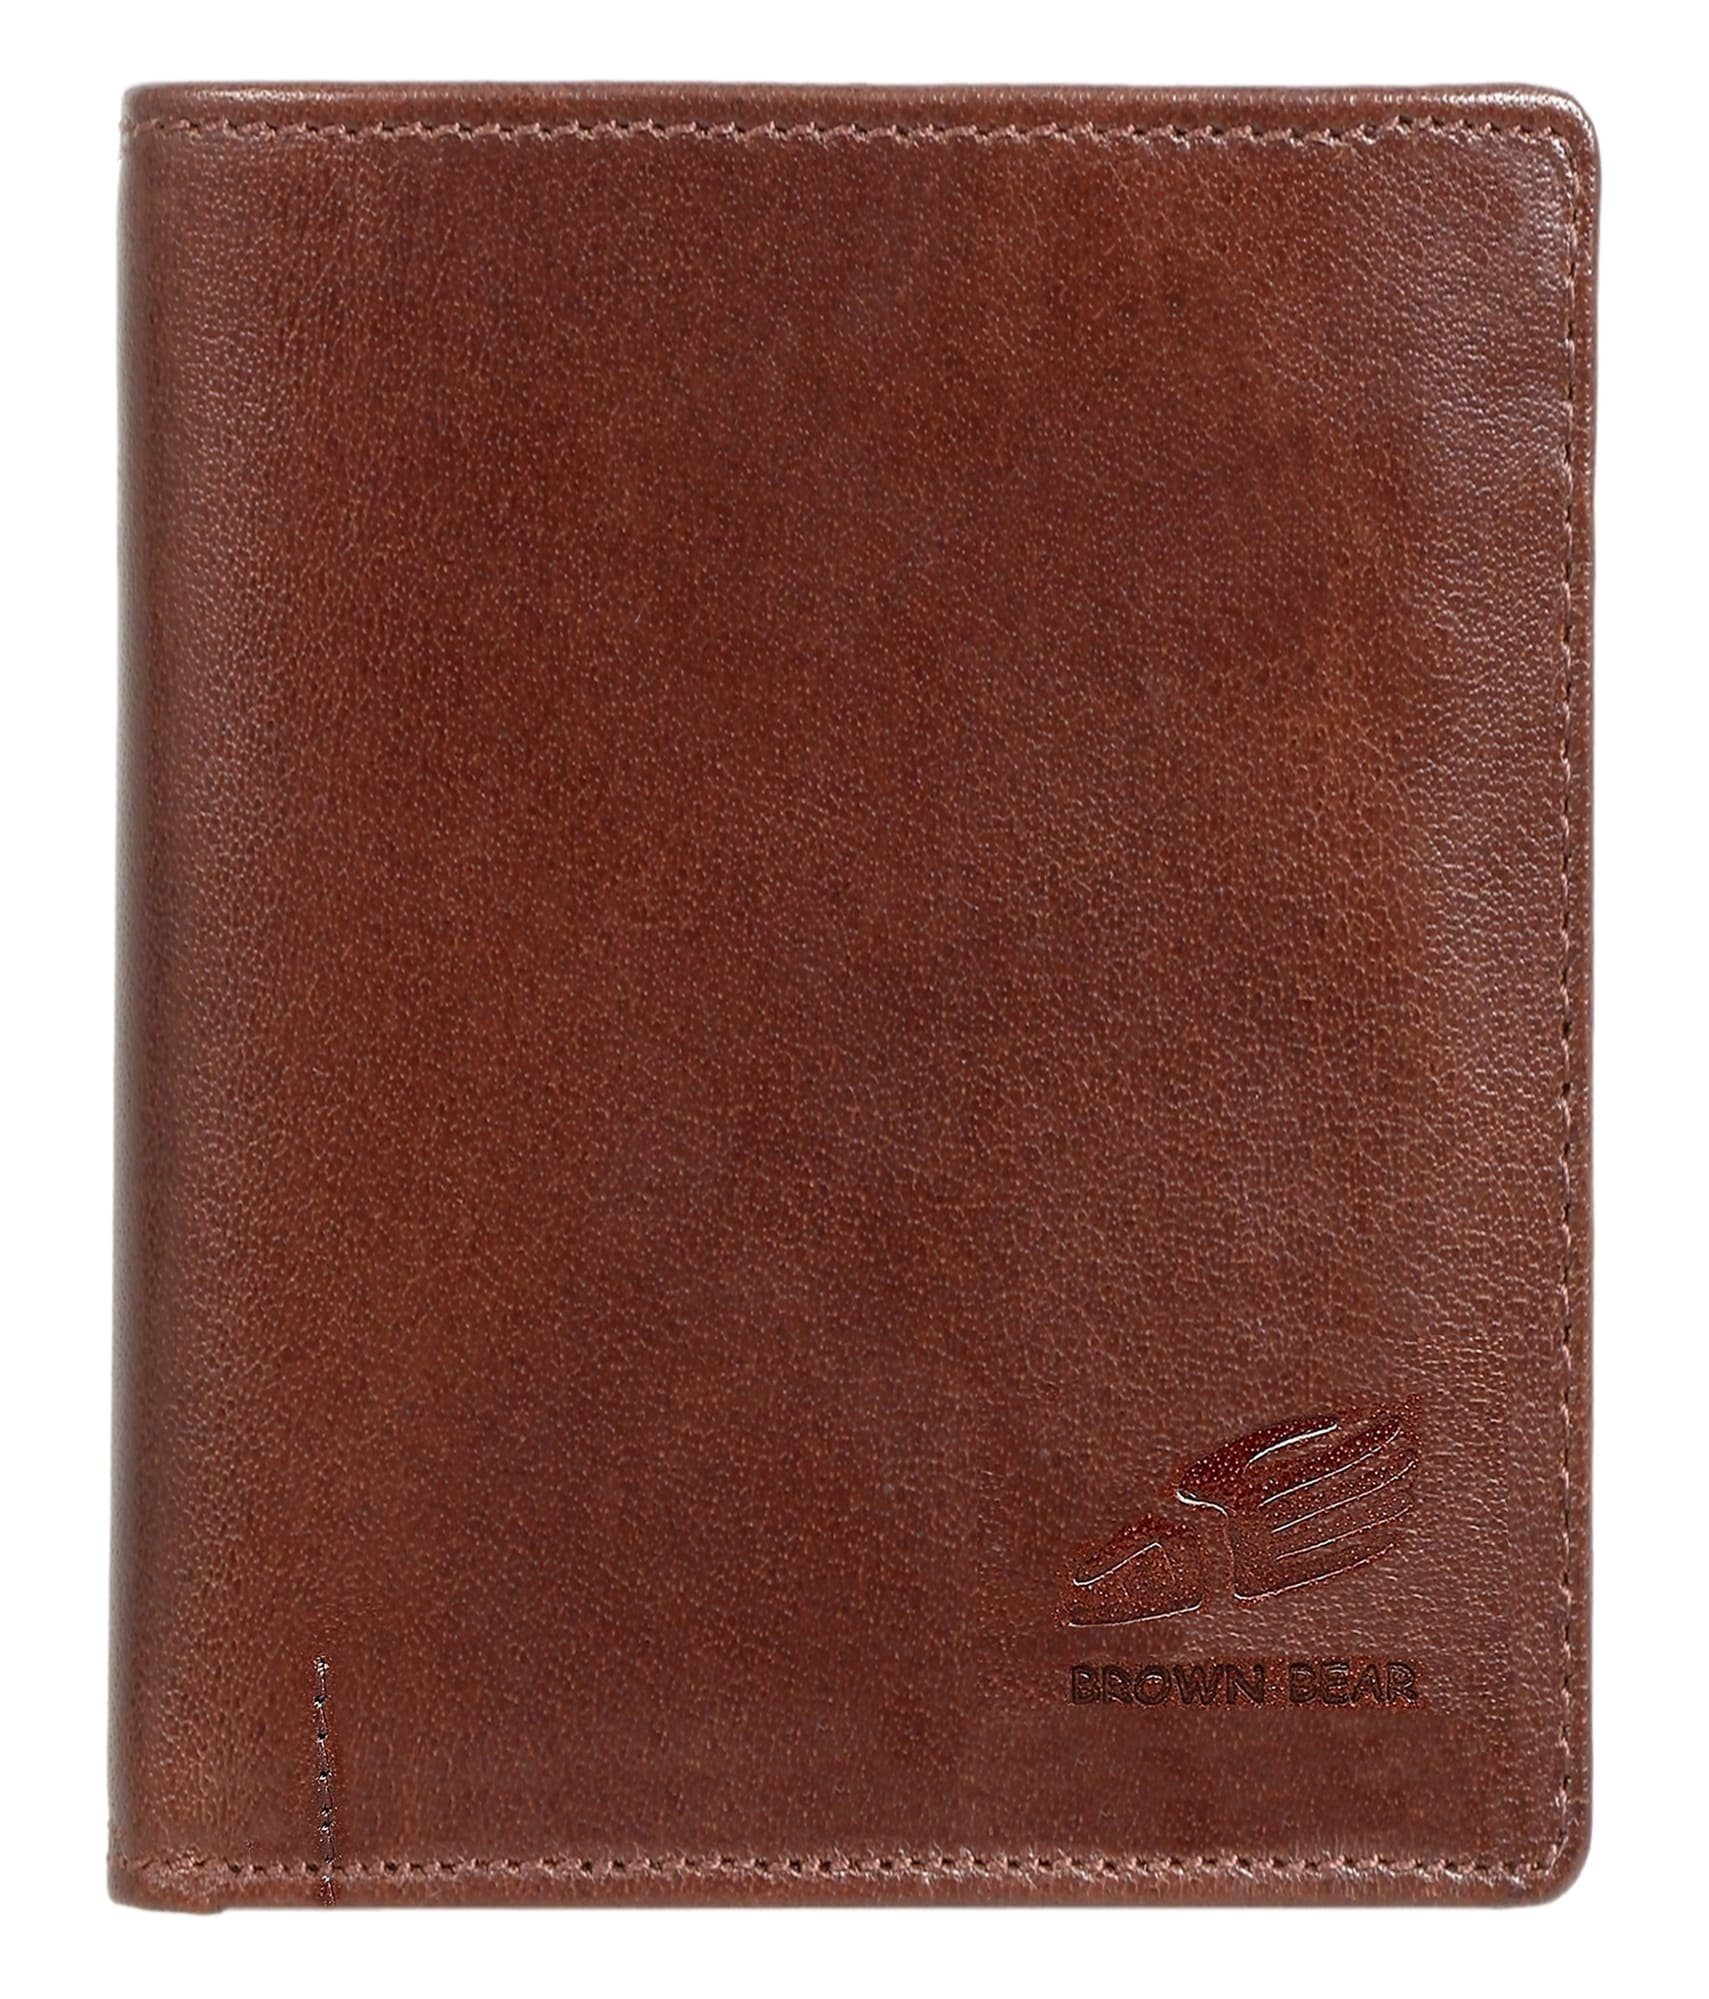 Brown Bear Geldbörse IBP 2051 Reißverschlussinnenfach Unisex Echtleder, 11 Kartenfächer Sichtfach RFID Schutz Braun Braun Toscana